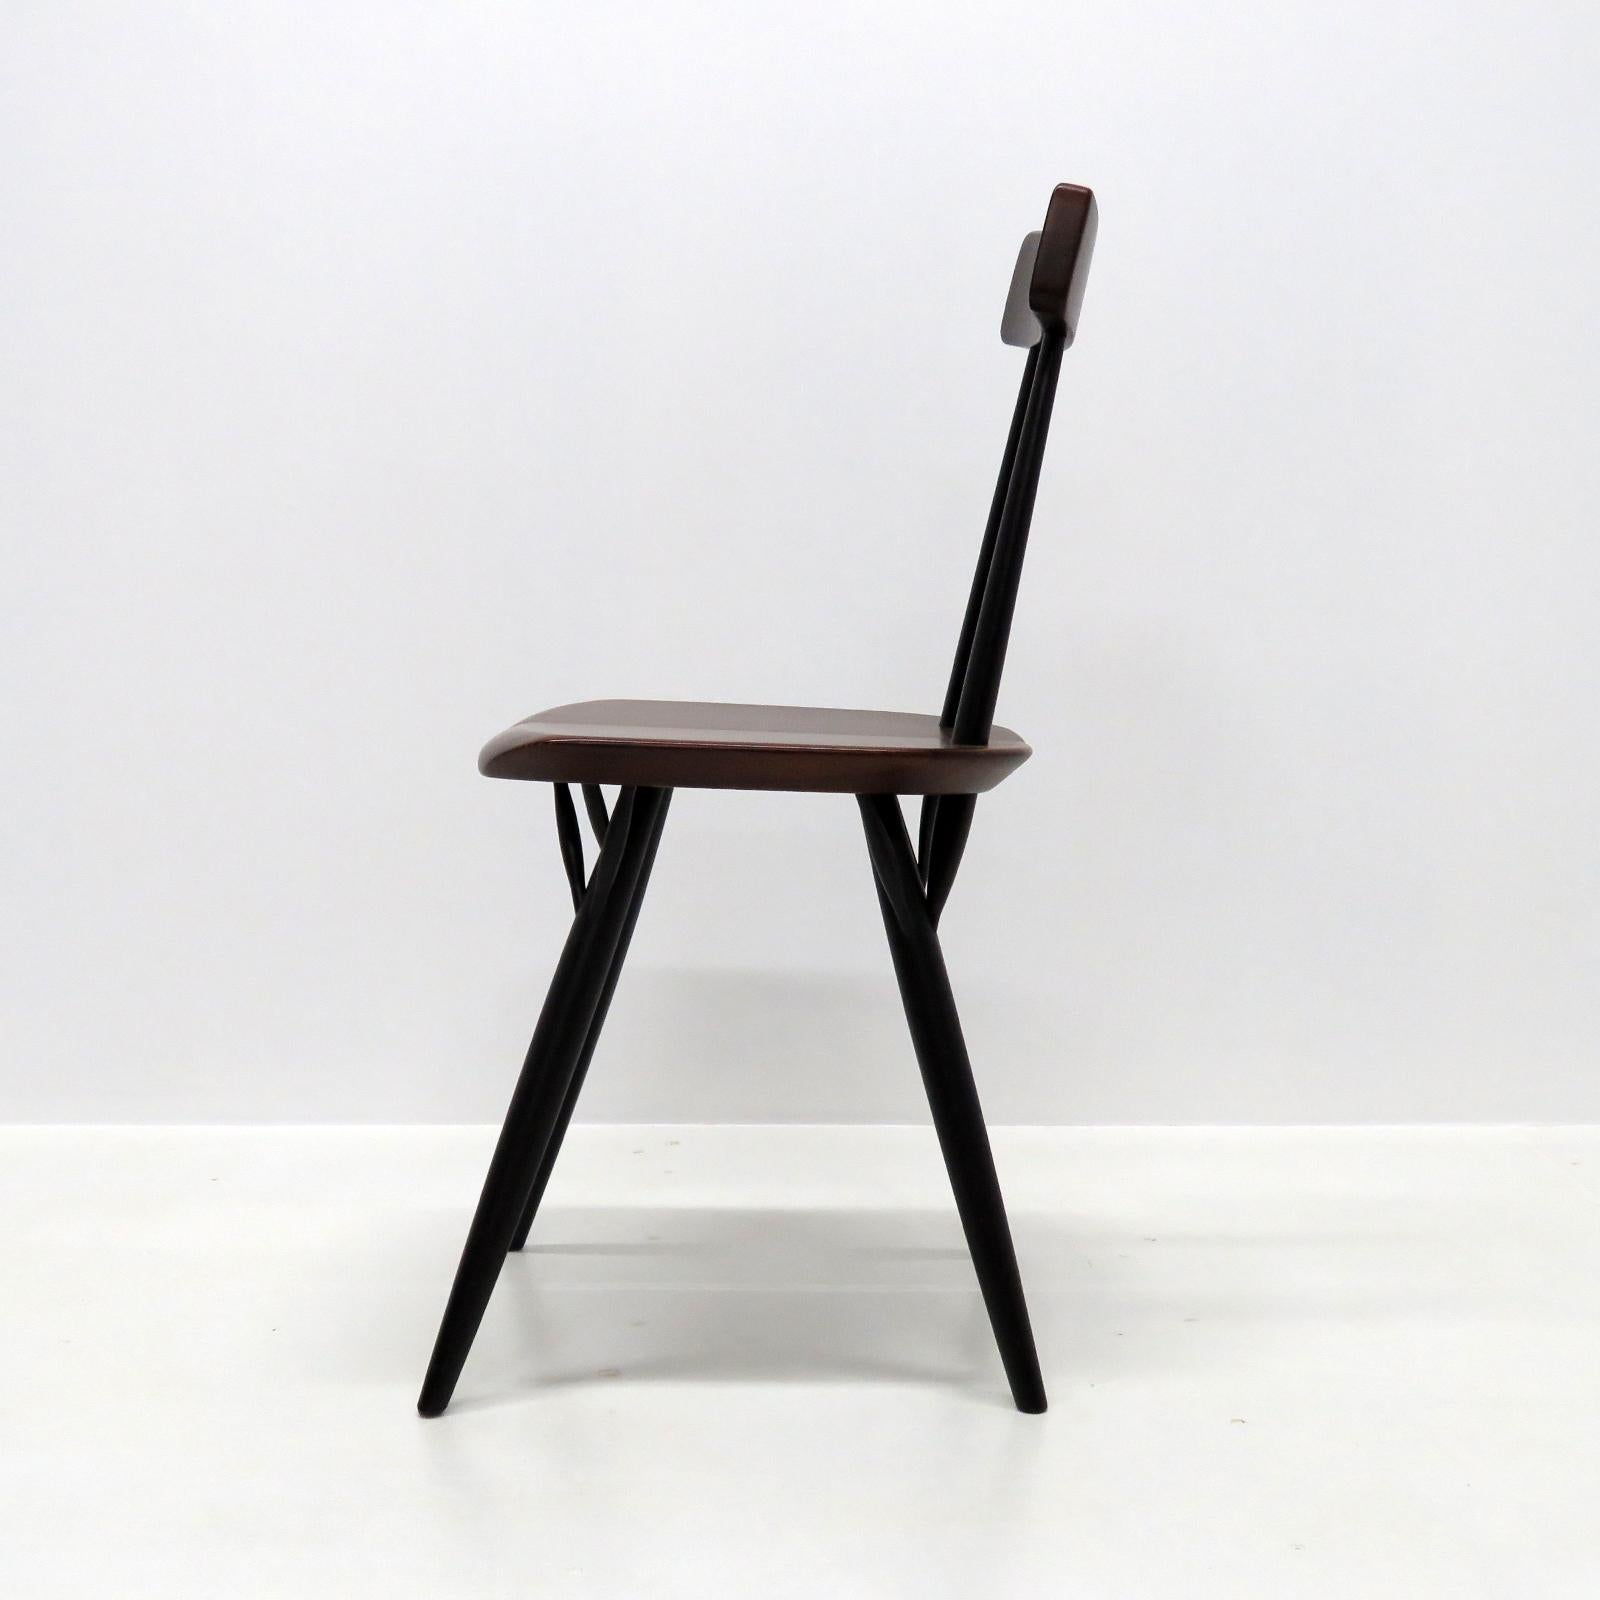 Lacquered Ilmari Tapiovaara, ‘Pirkka’ Chairs, 1955